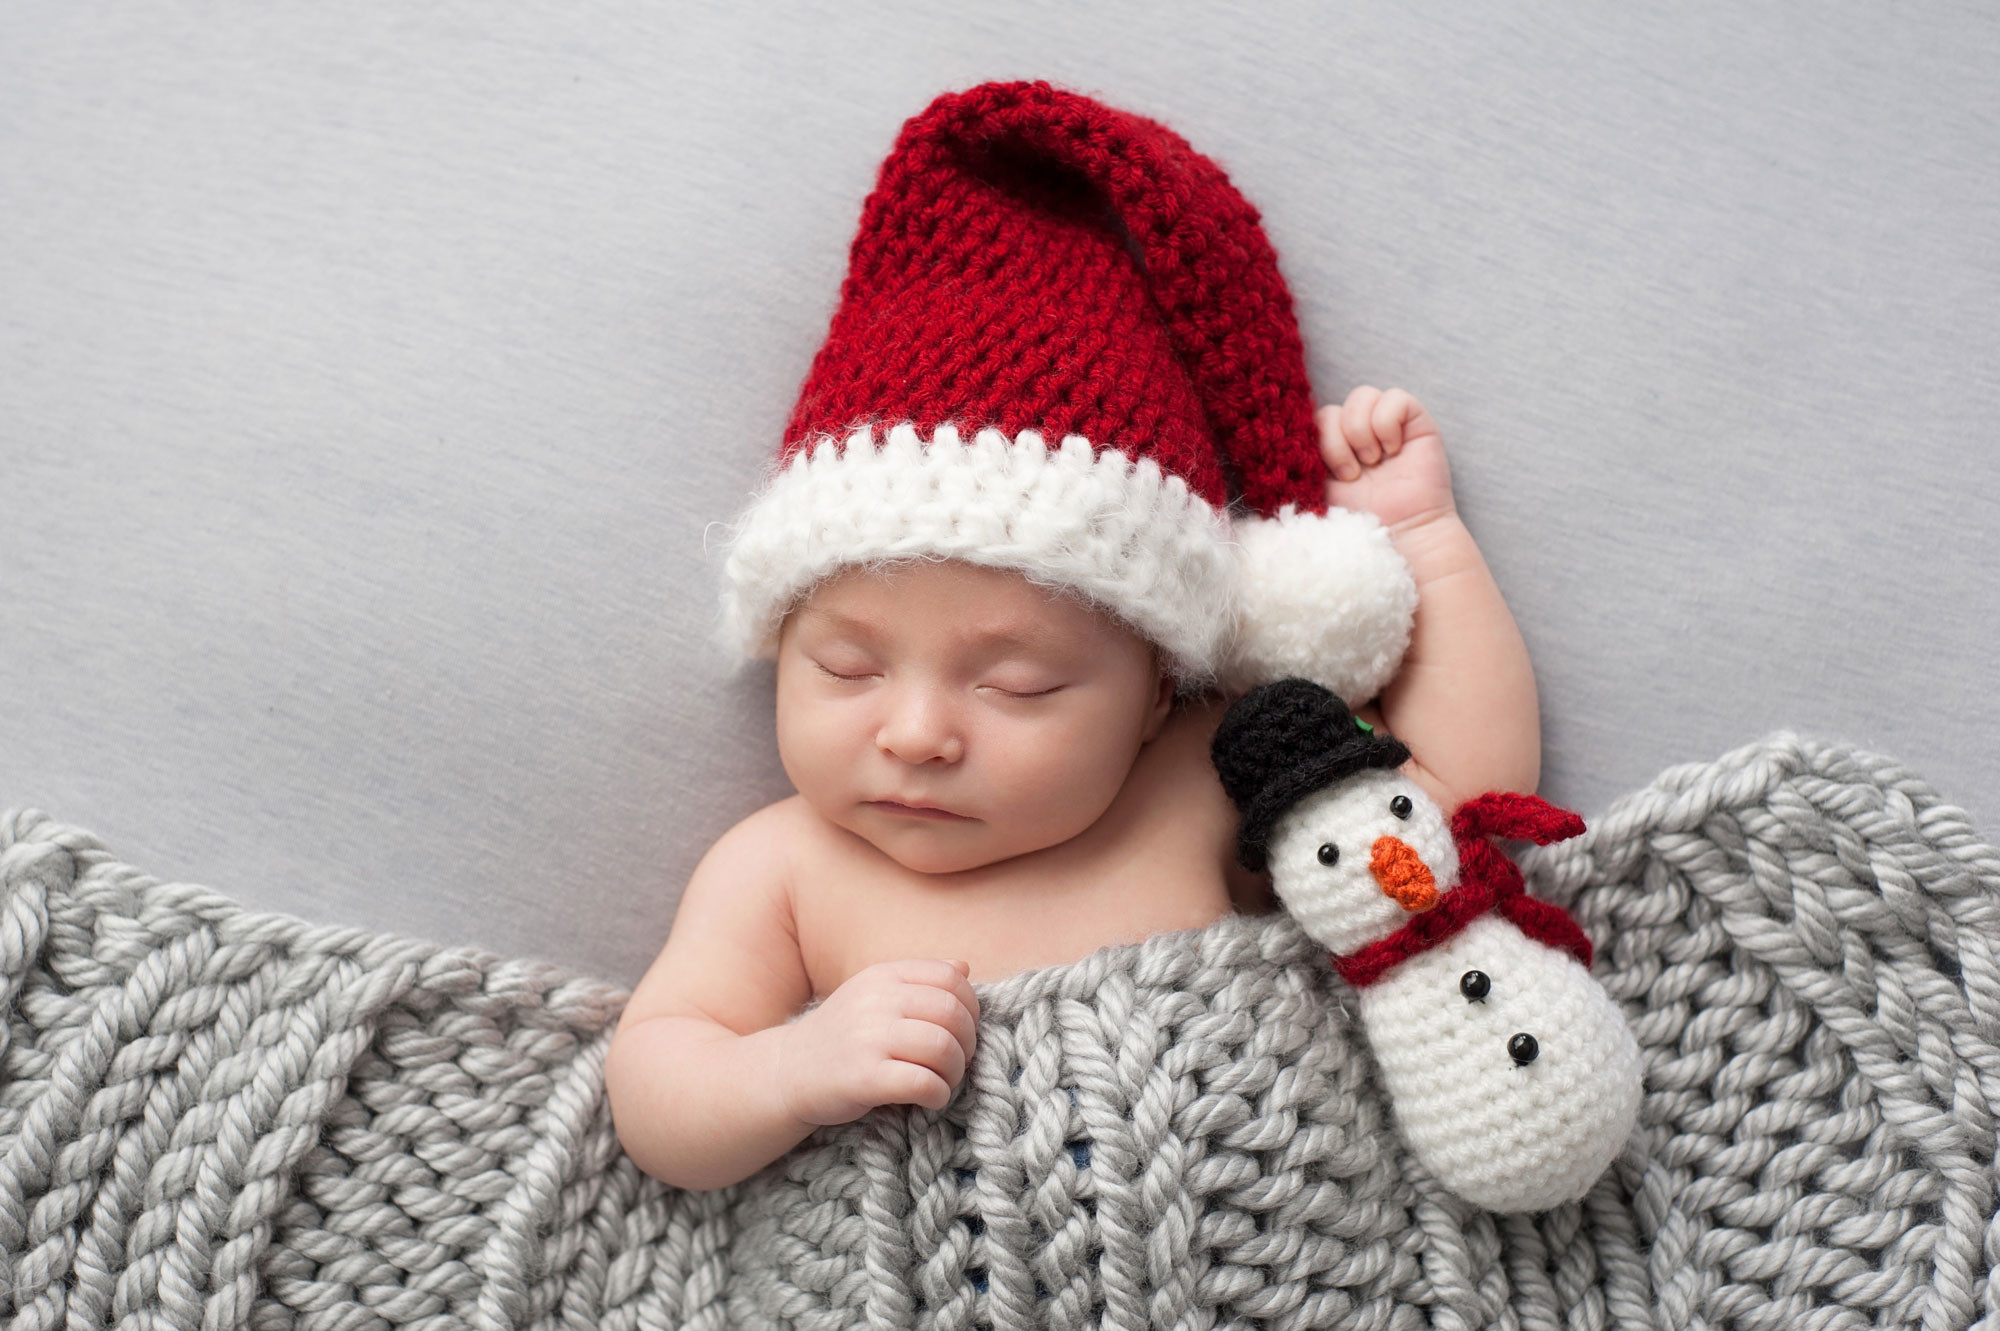 Tips para celebrar la Navidad junto a tu bebé